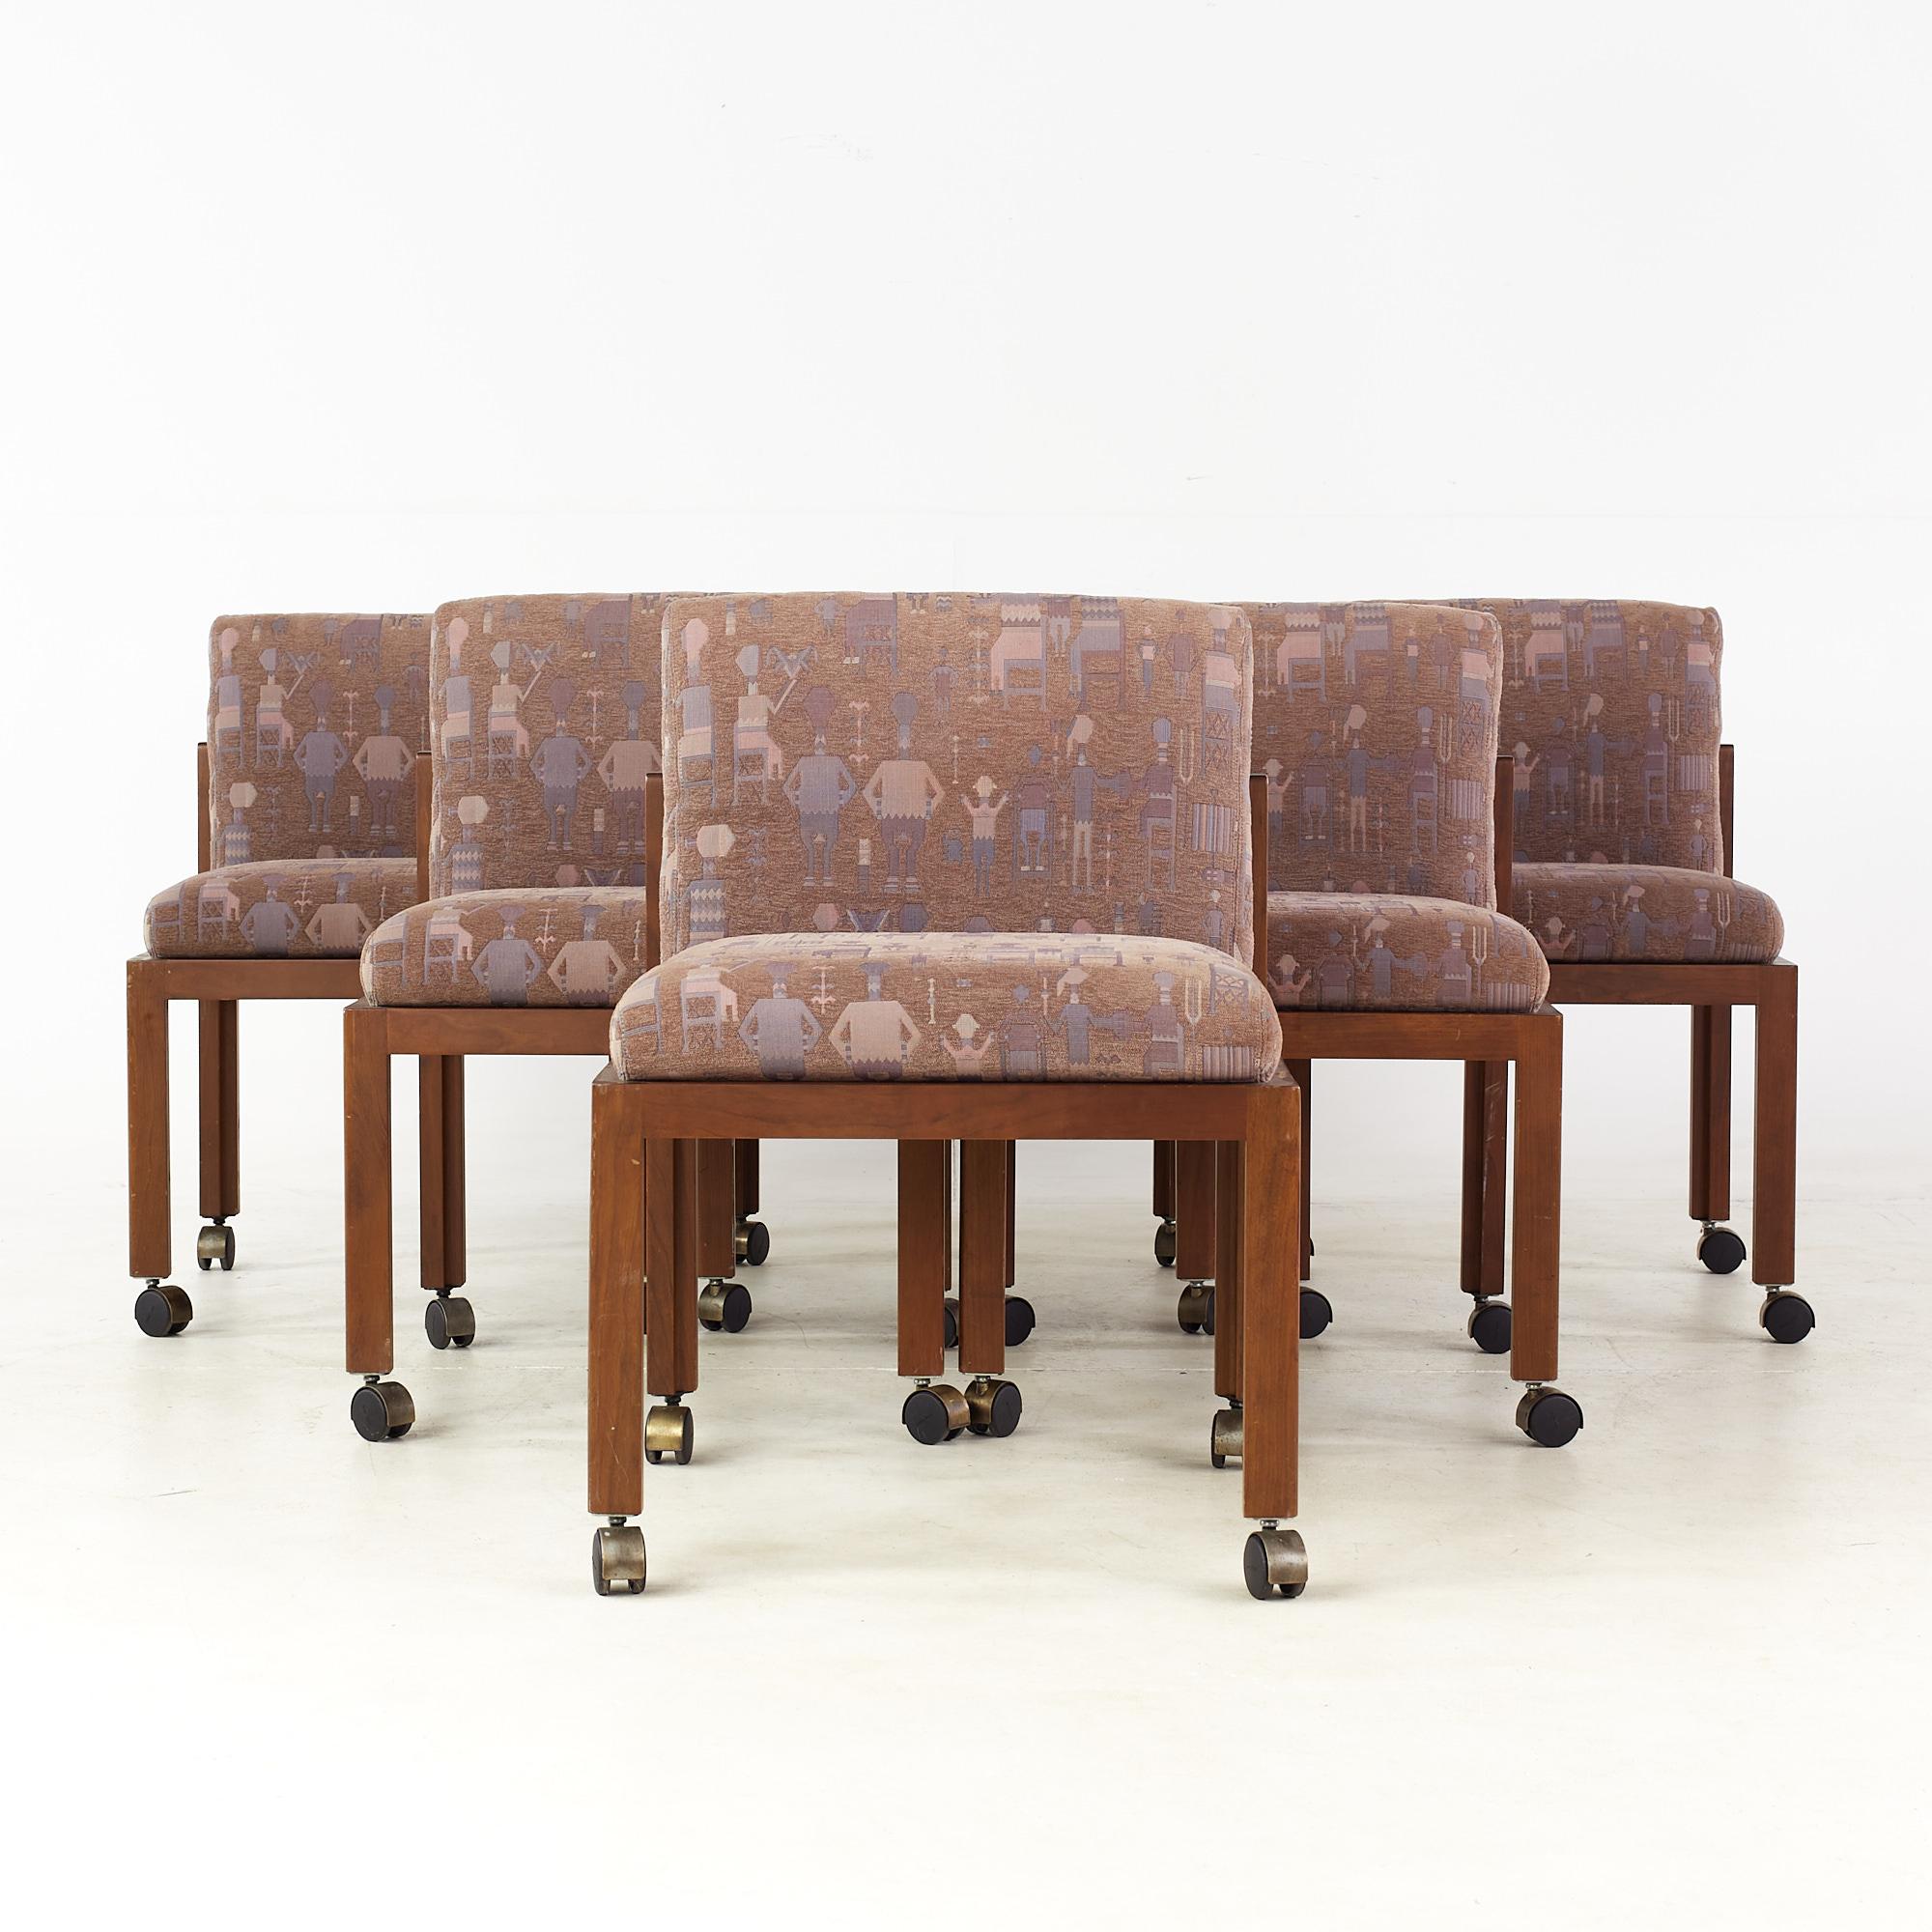 Chaises de salle à manger latérales du milieu du siècle de style Lloyds - ensemble de 6

Chaque fauteuil sans accoudoir mesure : 22,5 de large x 22,75 de profond x 32 de haut, avec une hauteur d'assise de 19,5 pouces.

Tous les meubles peuvent